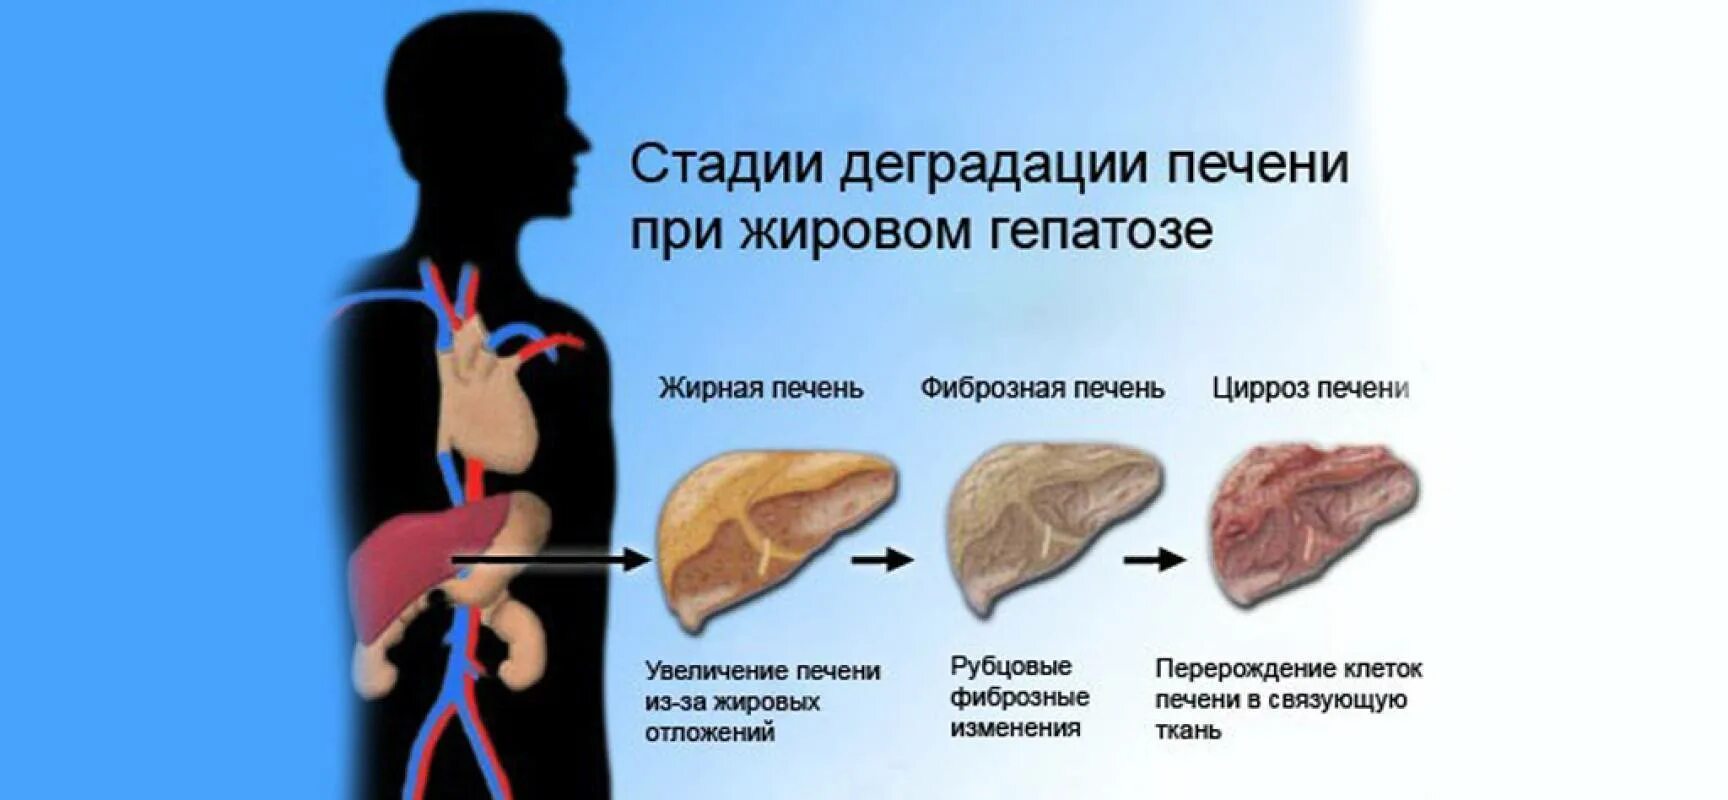 Жировые изменения печени и поджелудочной железы. Жировой гепатоз печени. Симптомы жирового гепатоза печени.